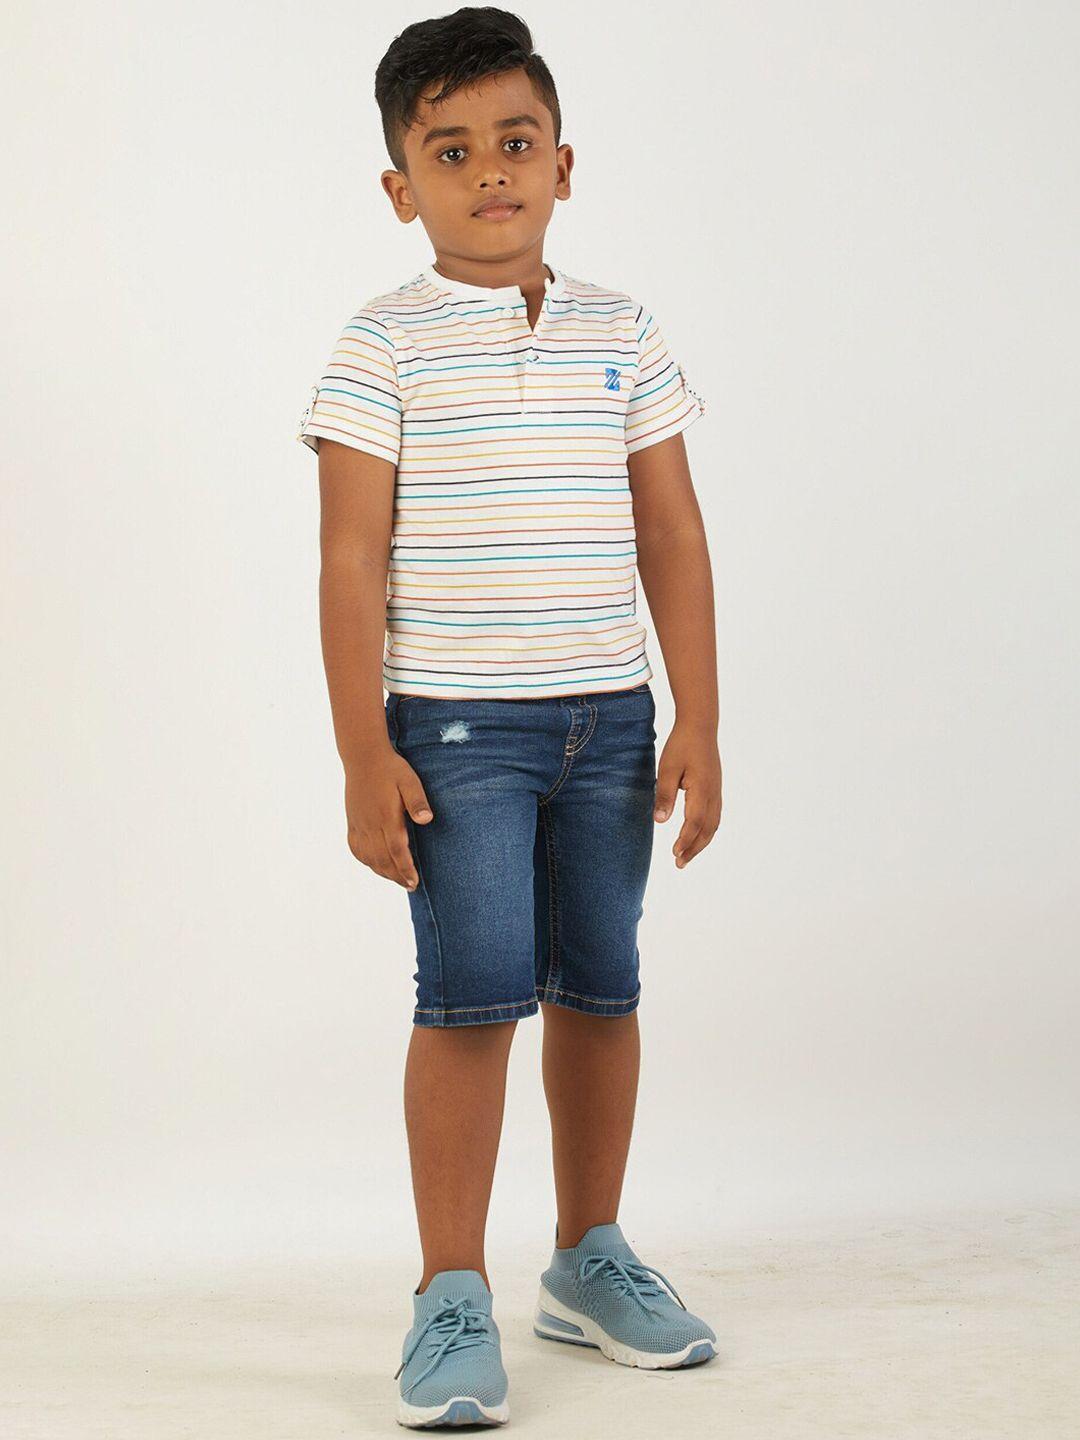 zalio-boys-white-&-blue-striped-cotton-clothing-set